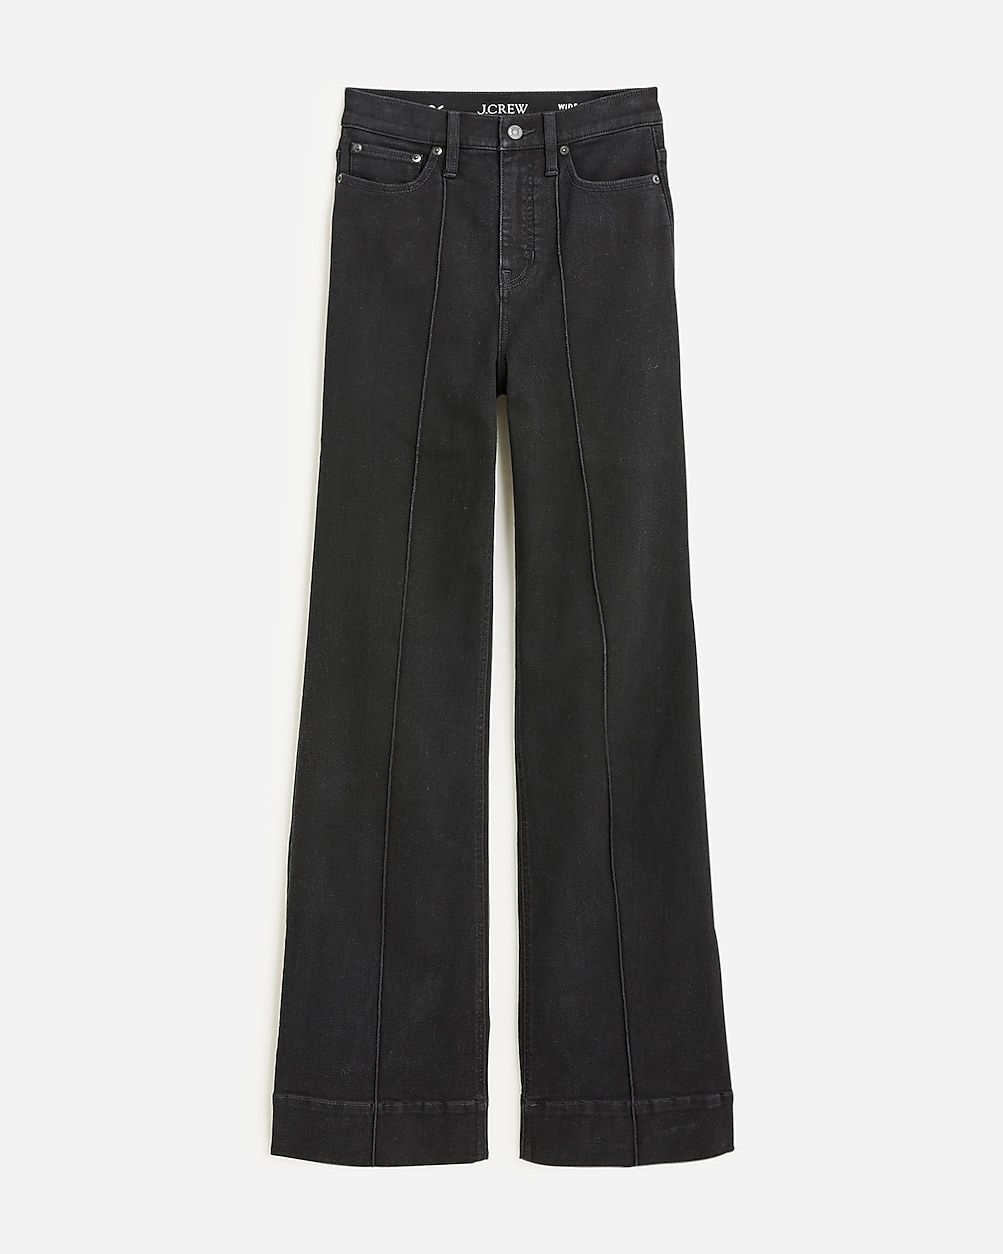 Pintuck denim trouser in black | J.Crew US